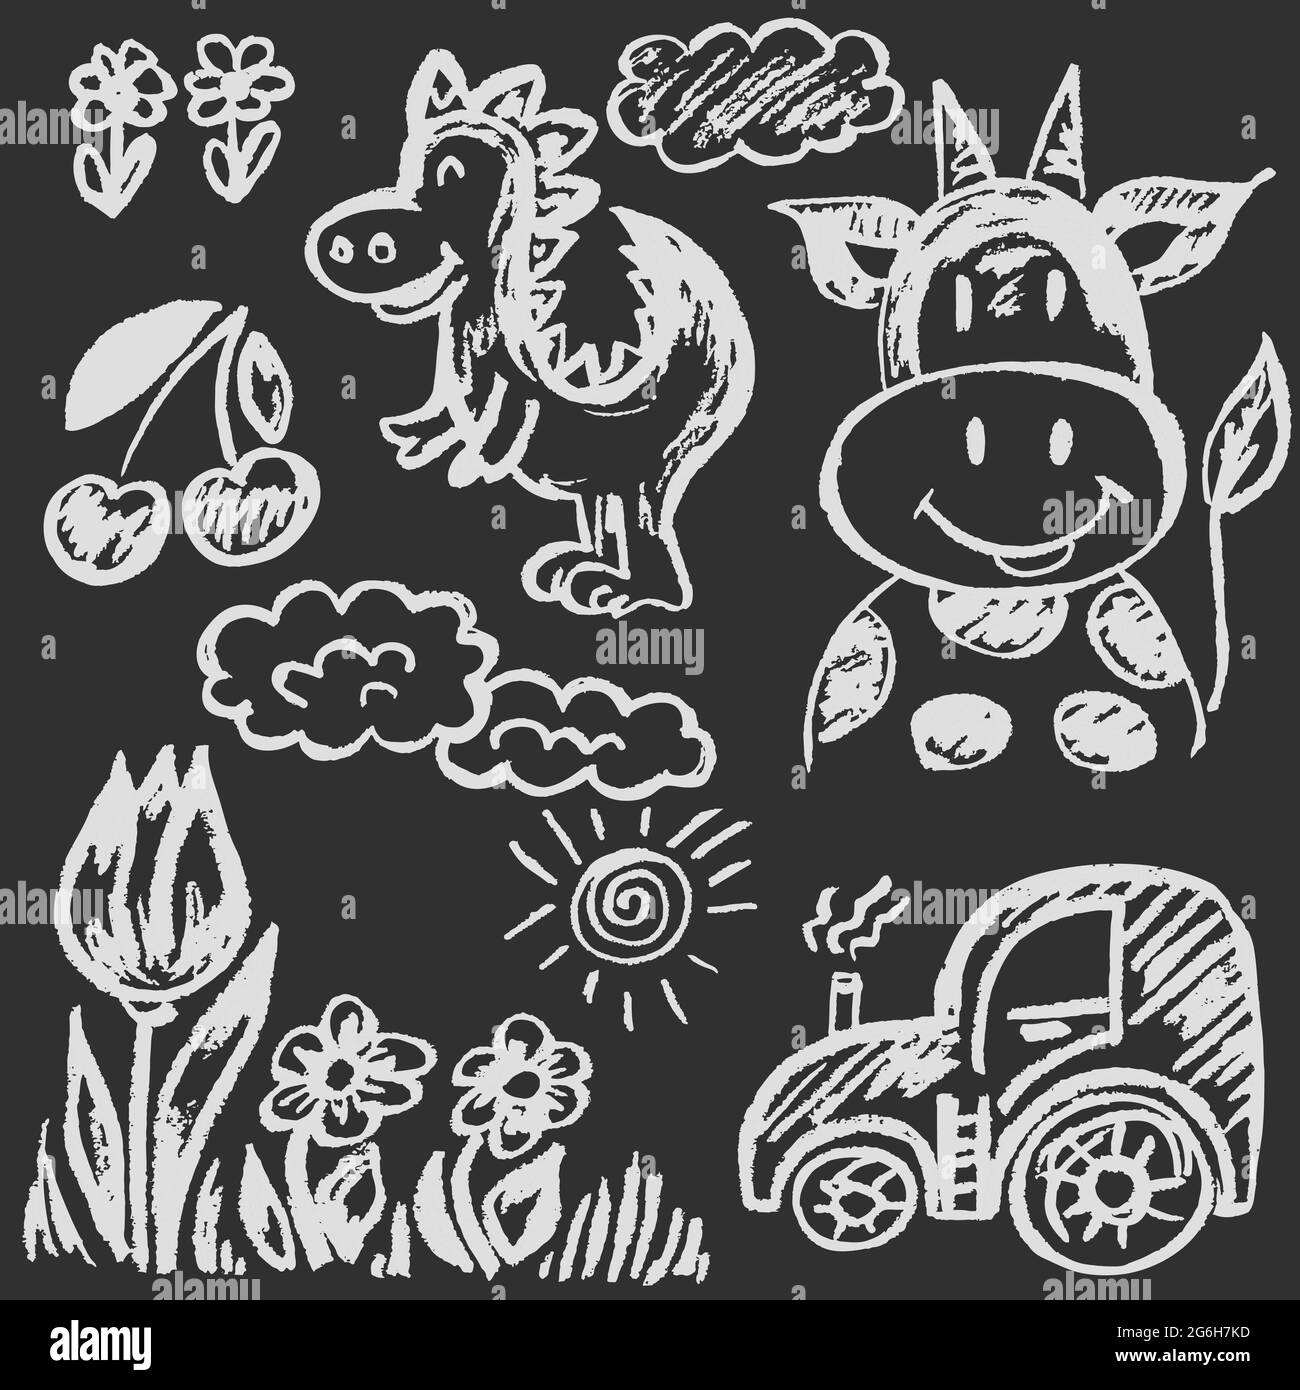 Joli dessin enfant avec craie blanche sur tableau noir. Craie pastel ou crayon drôle de style Doodle vecteur. Vache, dinosaure, fleurs, tracteur Illustration de Vecteur